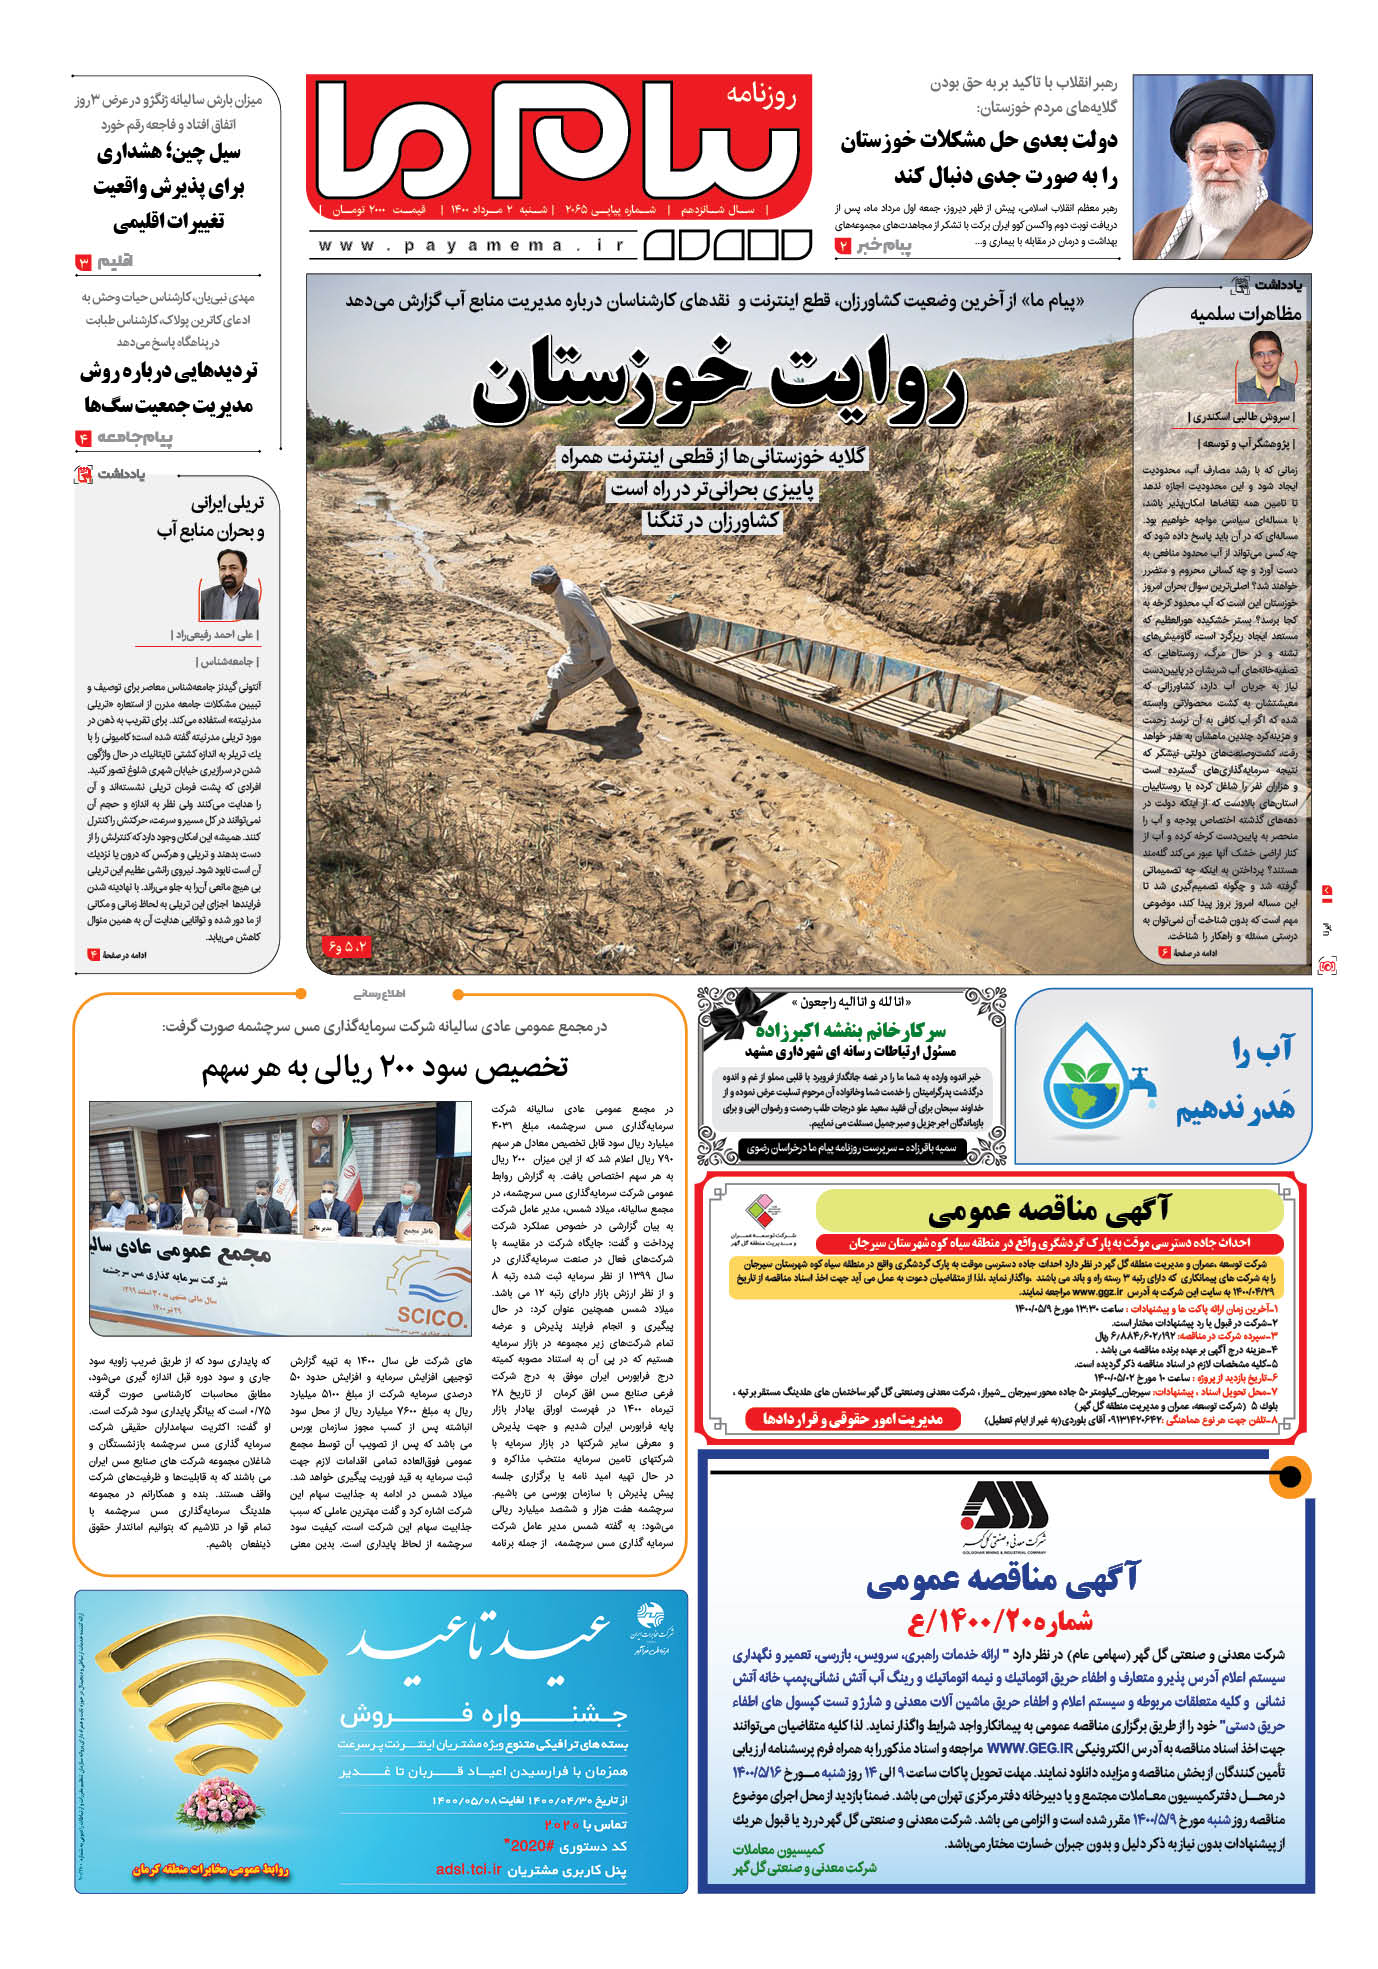 تریلی ایرانی و بحران منابع آب